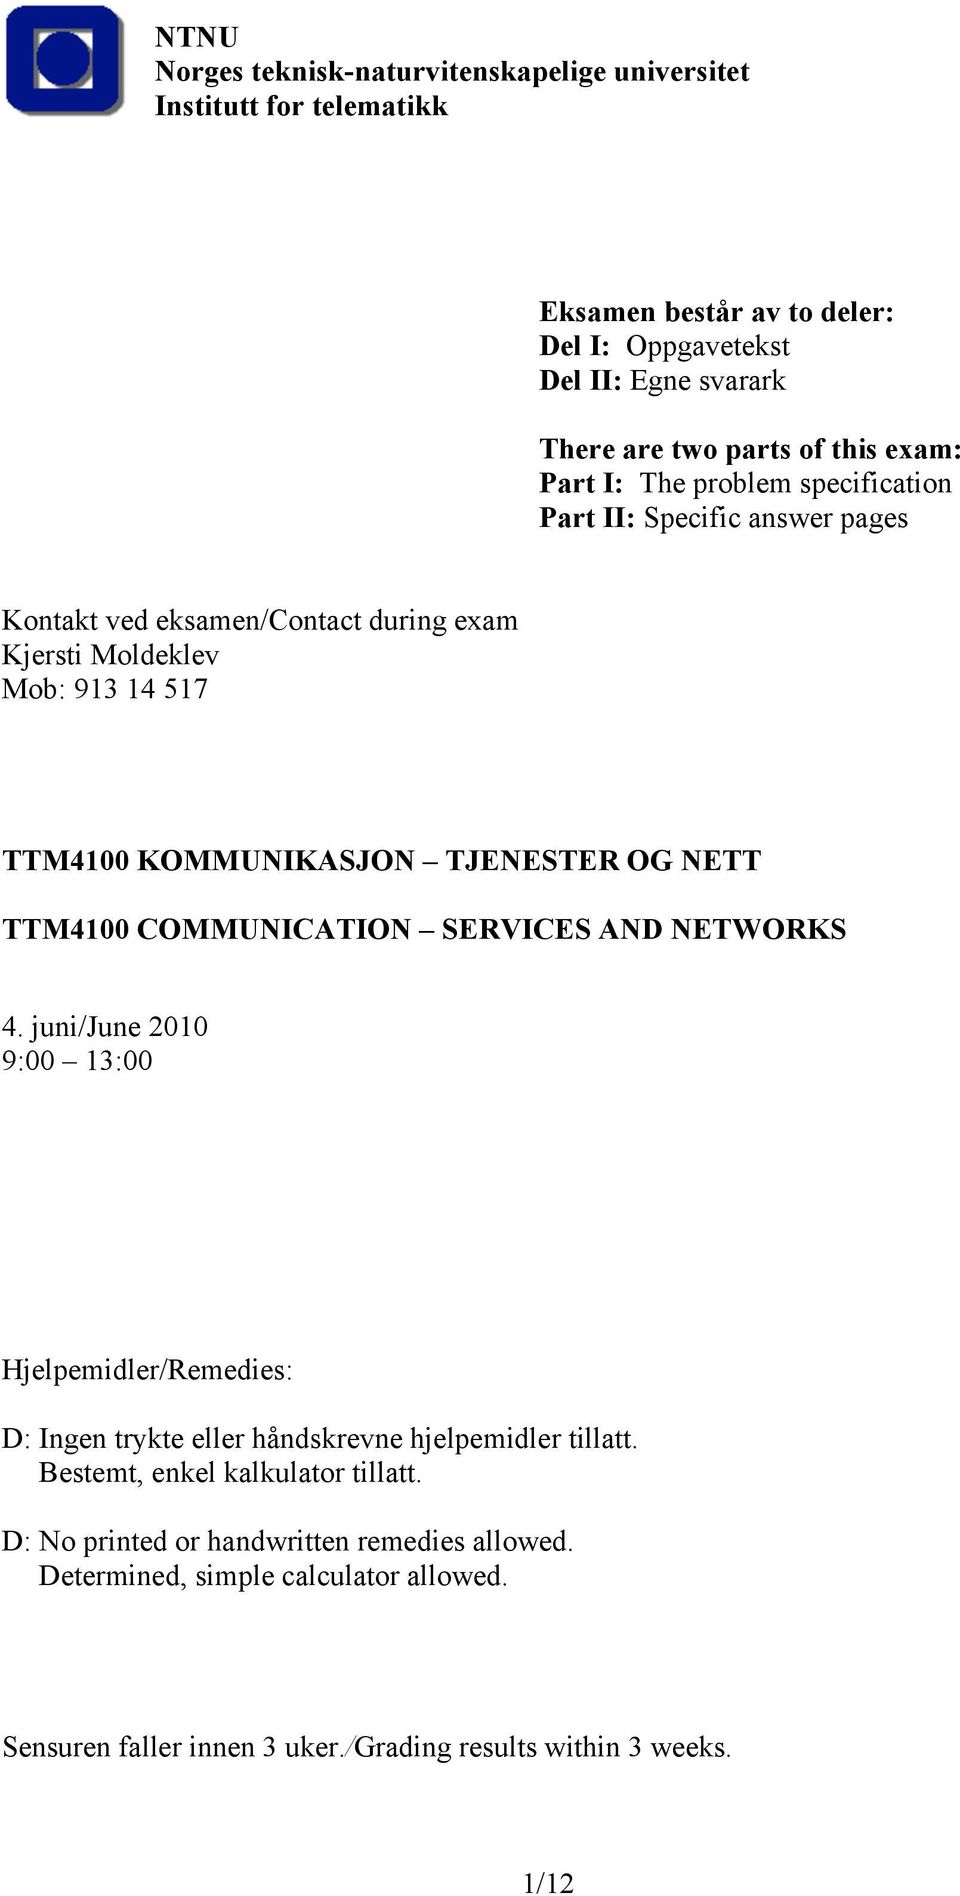 TJENESTER OG NETT TTM4100 COMMUNICATION SERVICES AND NETWORKS 4. juni/june 2010 9:00 13:00 Hjelpemidler/Remedies: D: Ingen trykte eller håndskrevne hjelpemidler tillatt.